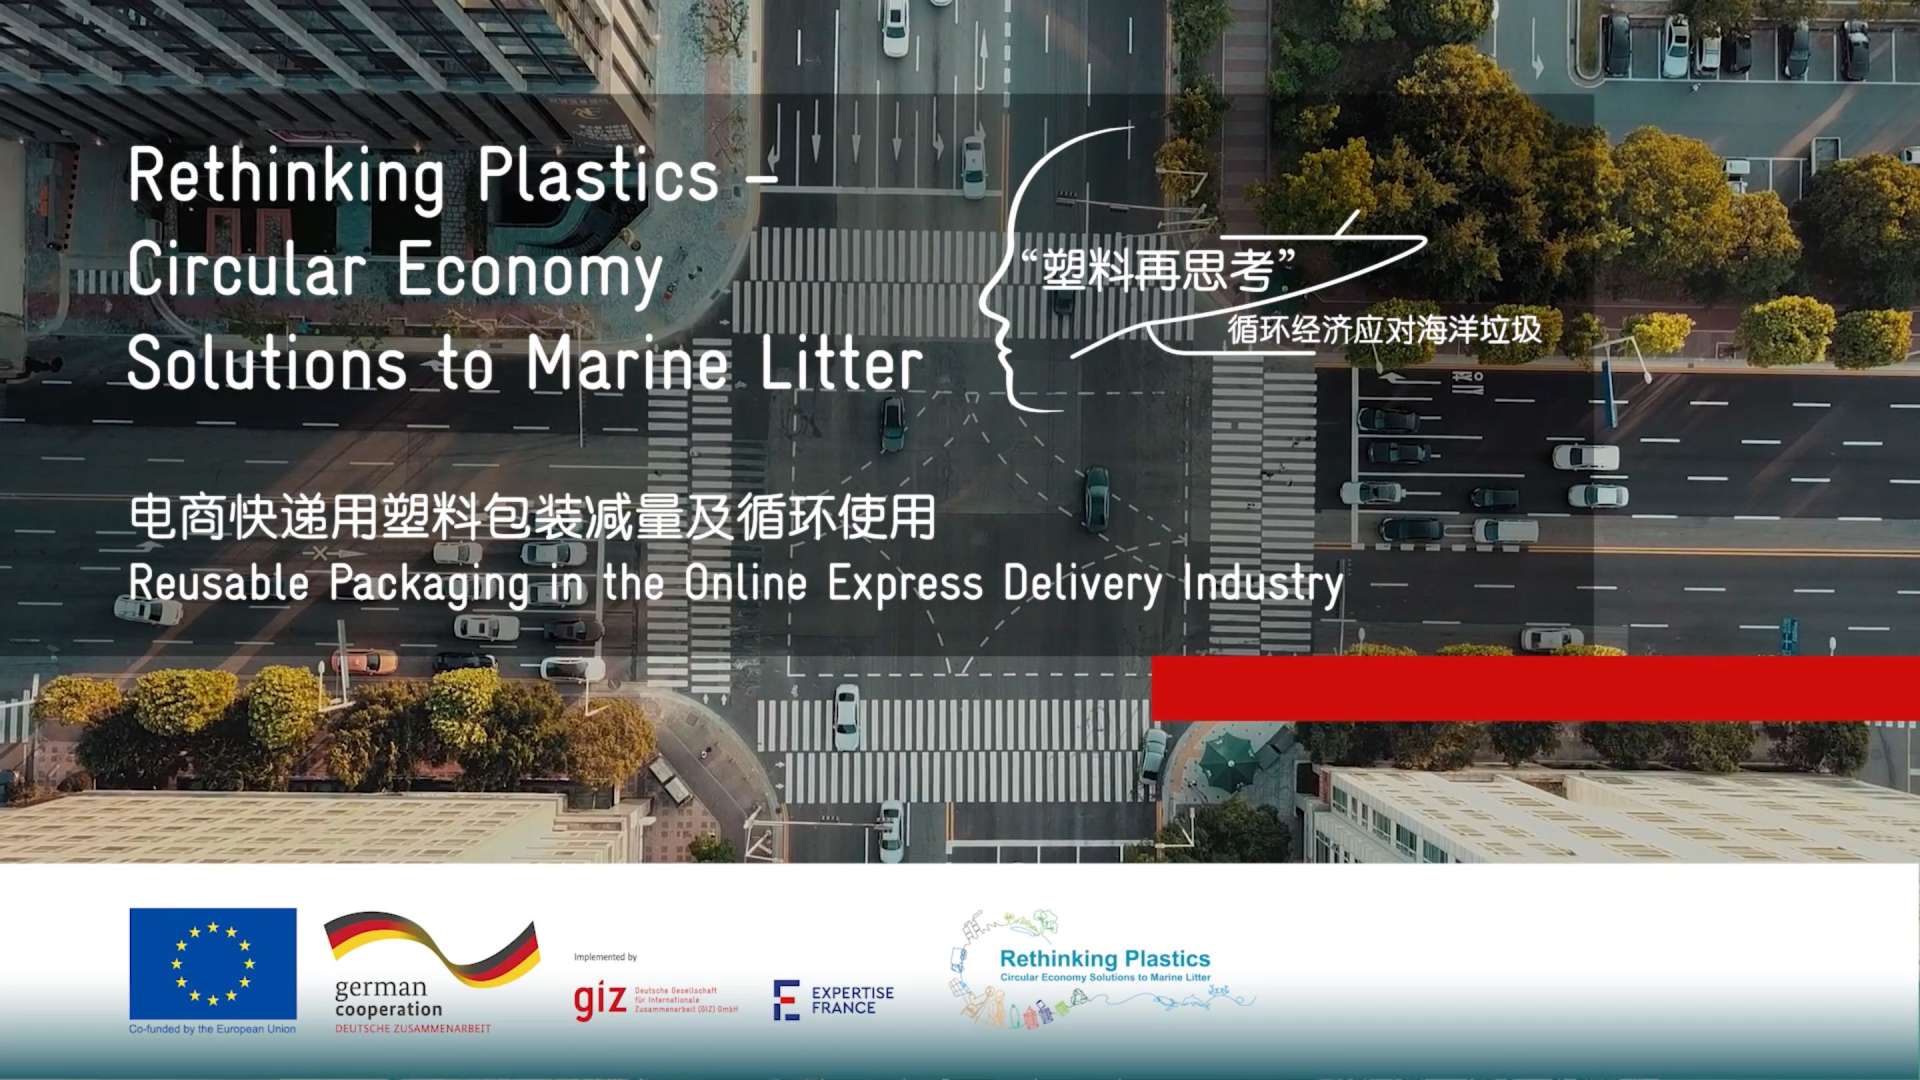 “塑料再思考 ”---电商快递塑料包装减量及循环使用（海口）